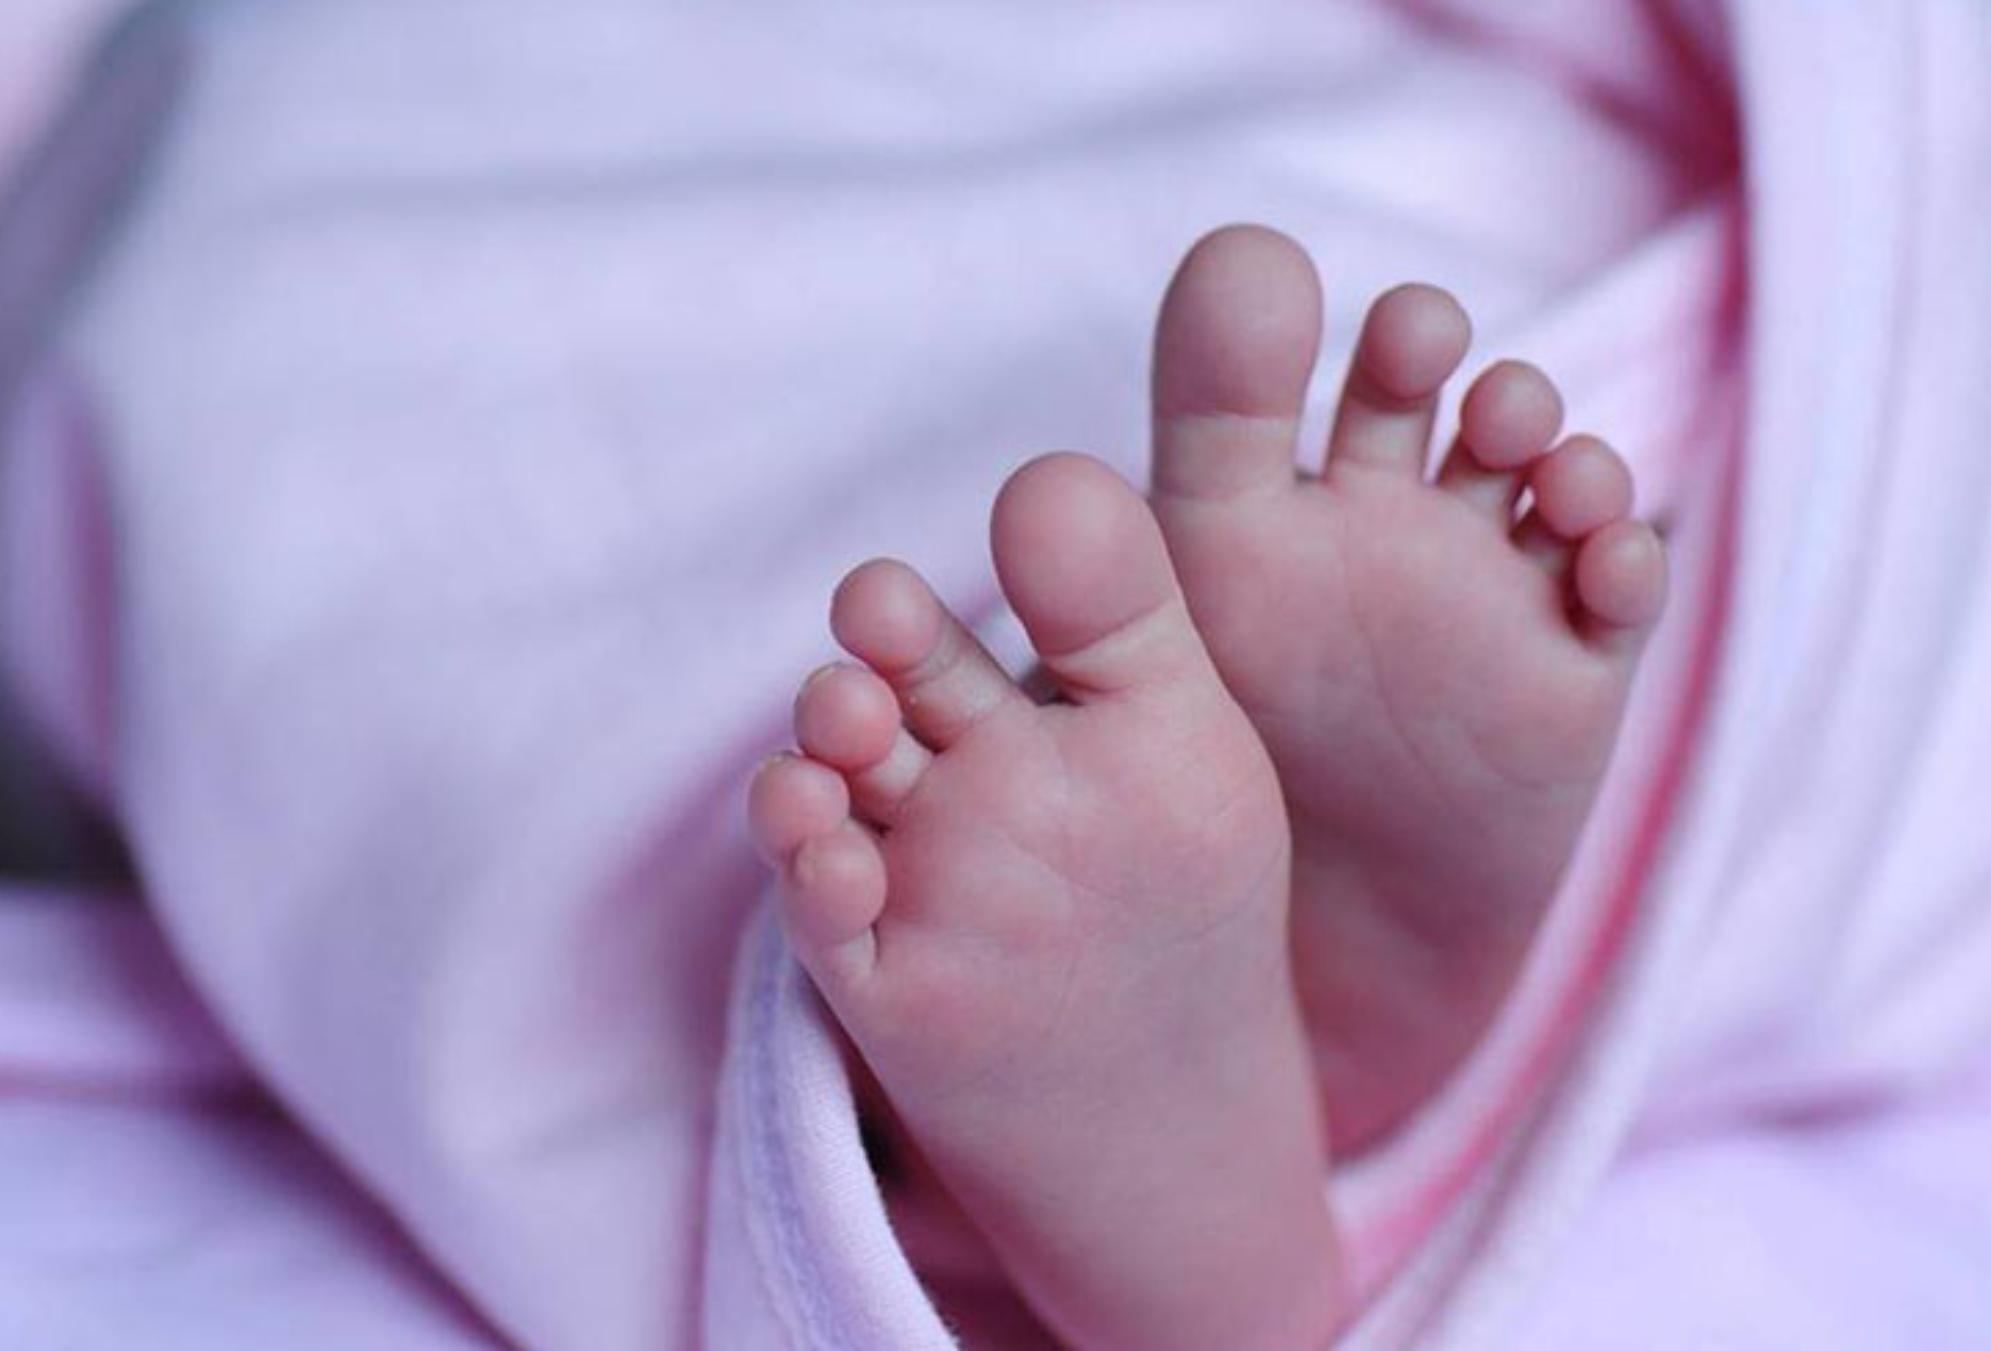 Κάτω Αχαΐα: Οικογενειακή τραγωδία – Μυστήριο με τον θάνατο δύο μωρών στην ίδια οικογένεια σε διάστημα ενός έτους